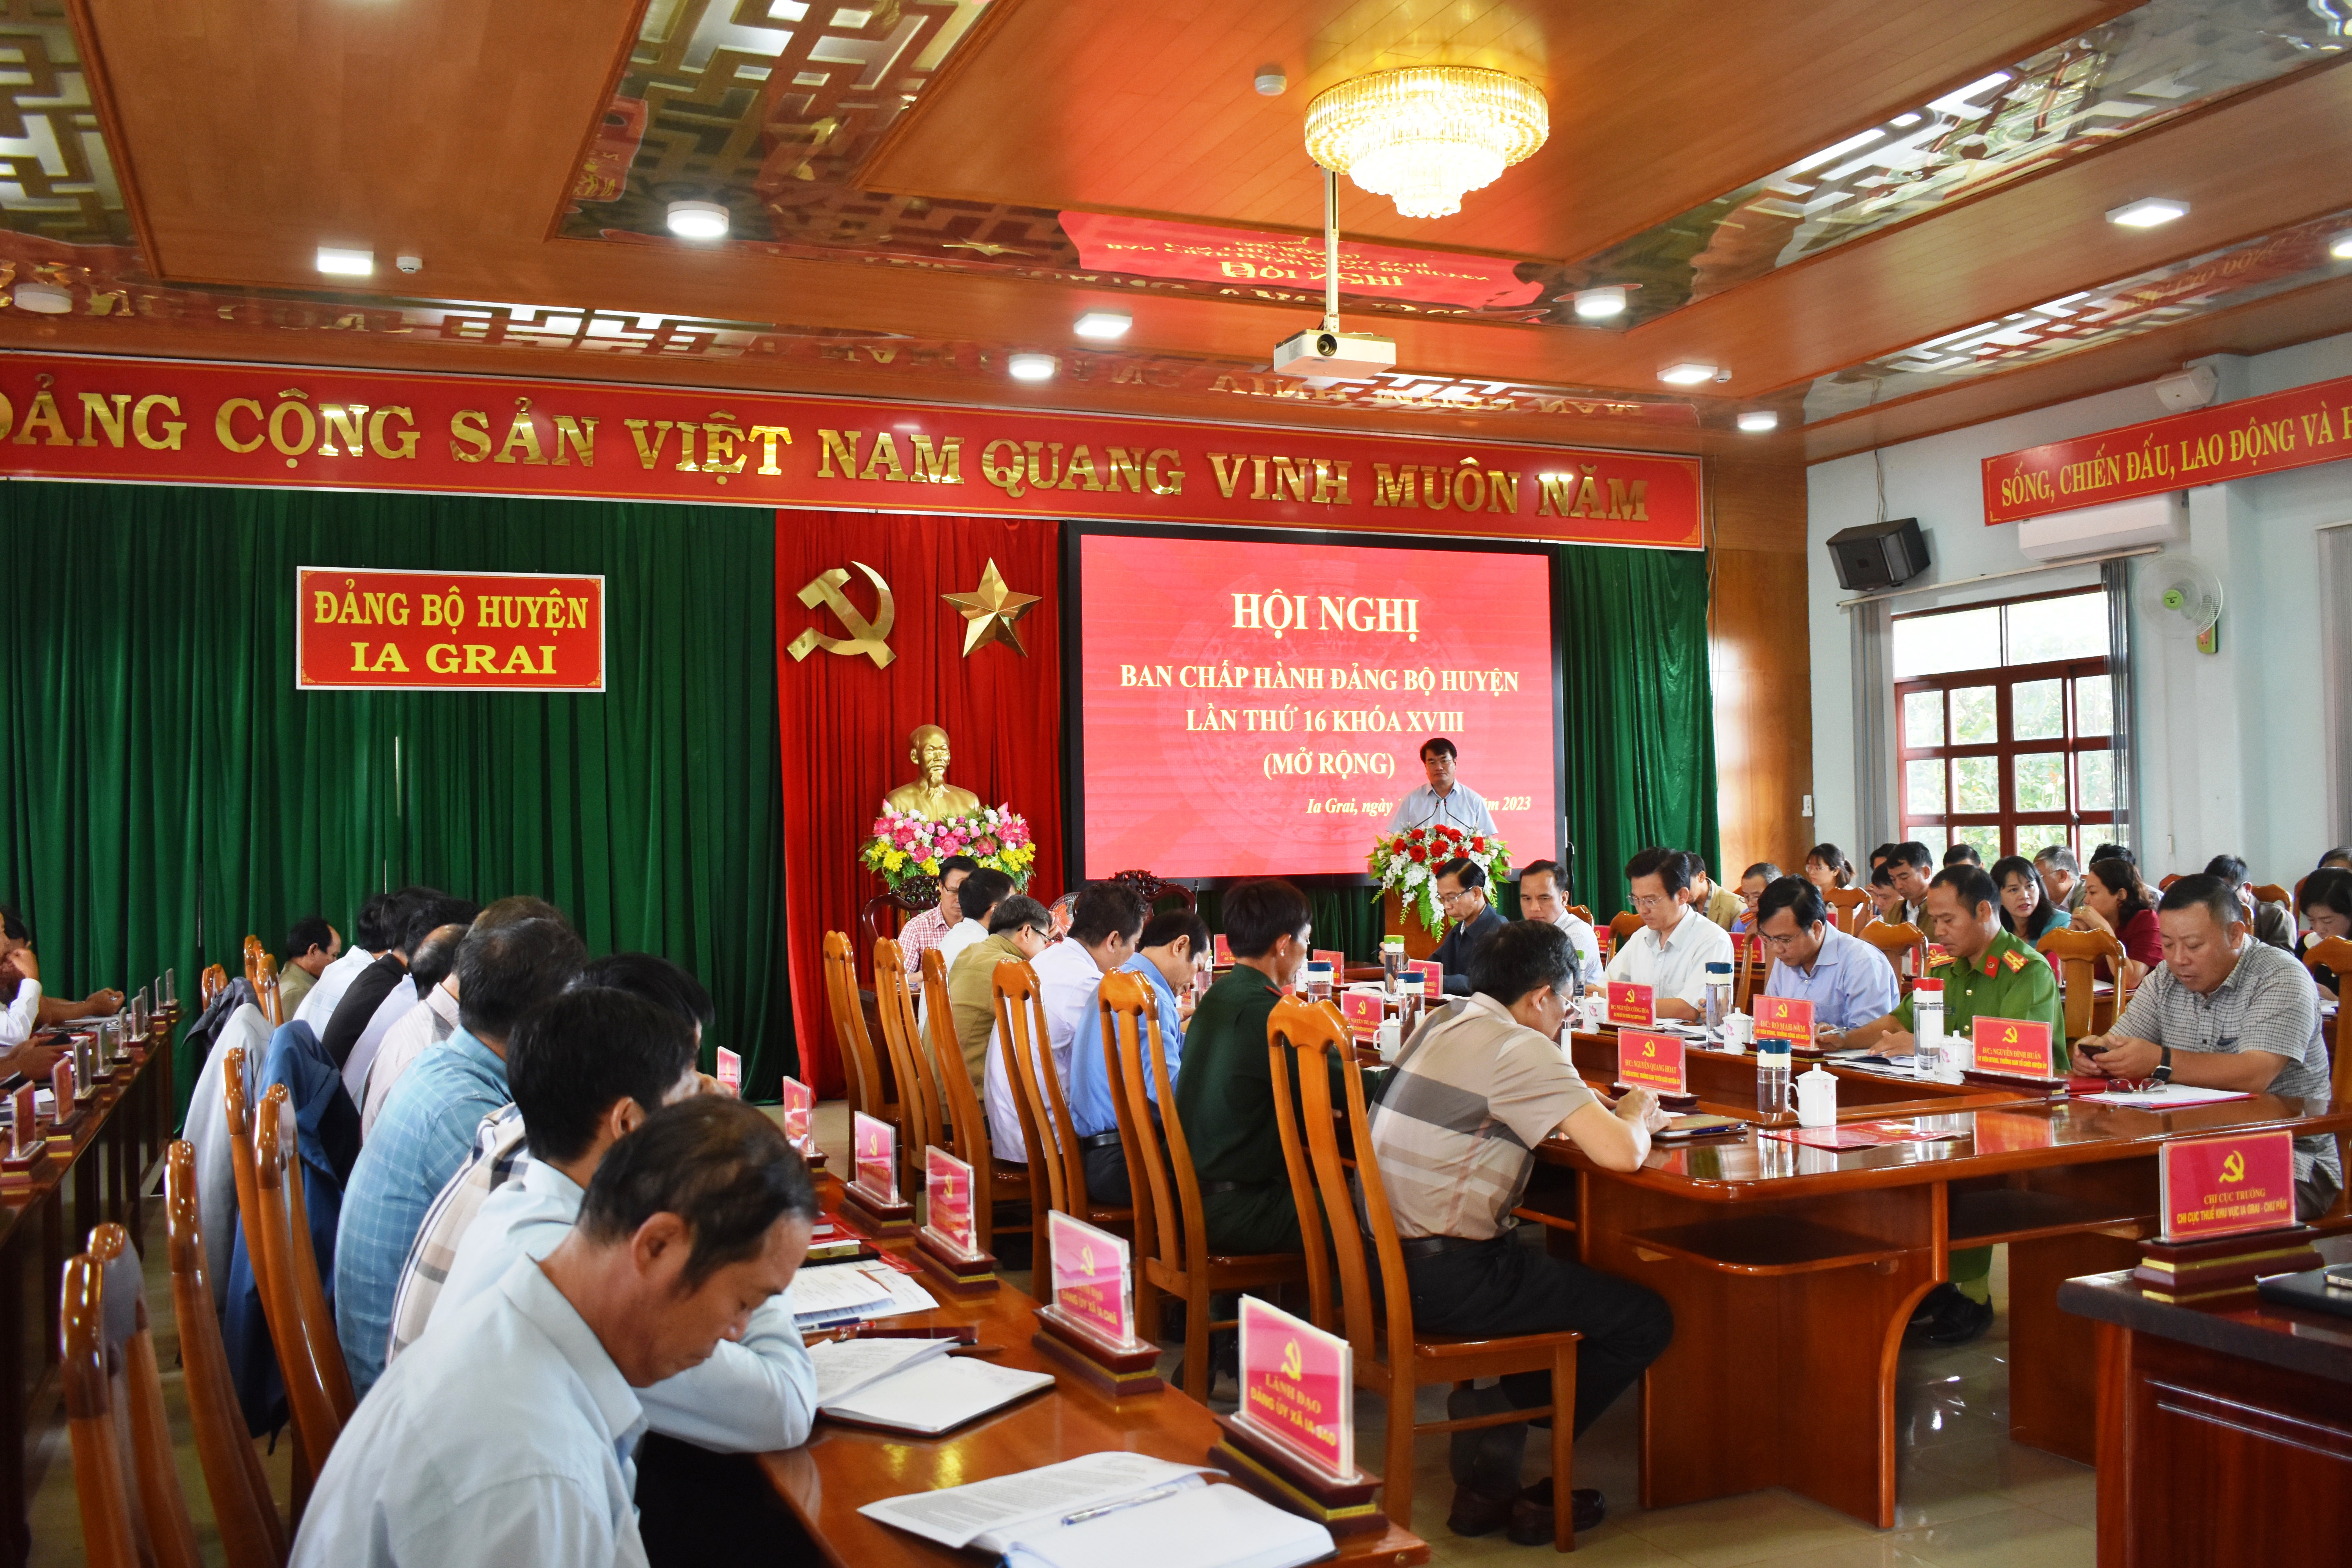 Article Ghi nhận Hội nghị Ban chấp hành Đảng bộ huyện  lần thứ 16 khóa XVIII (mở rộng)